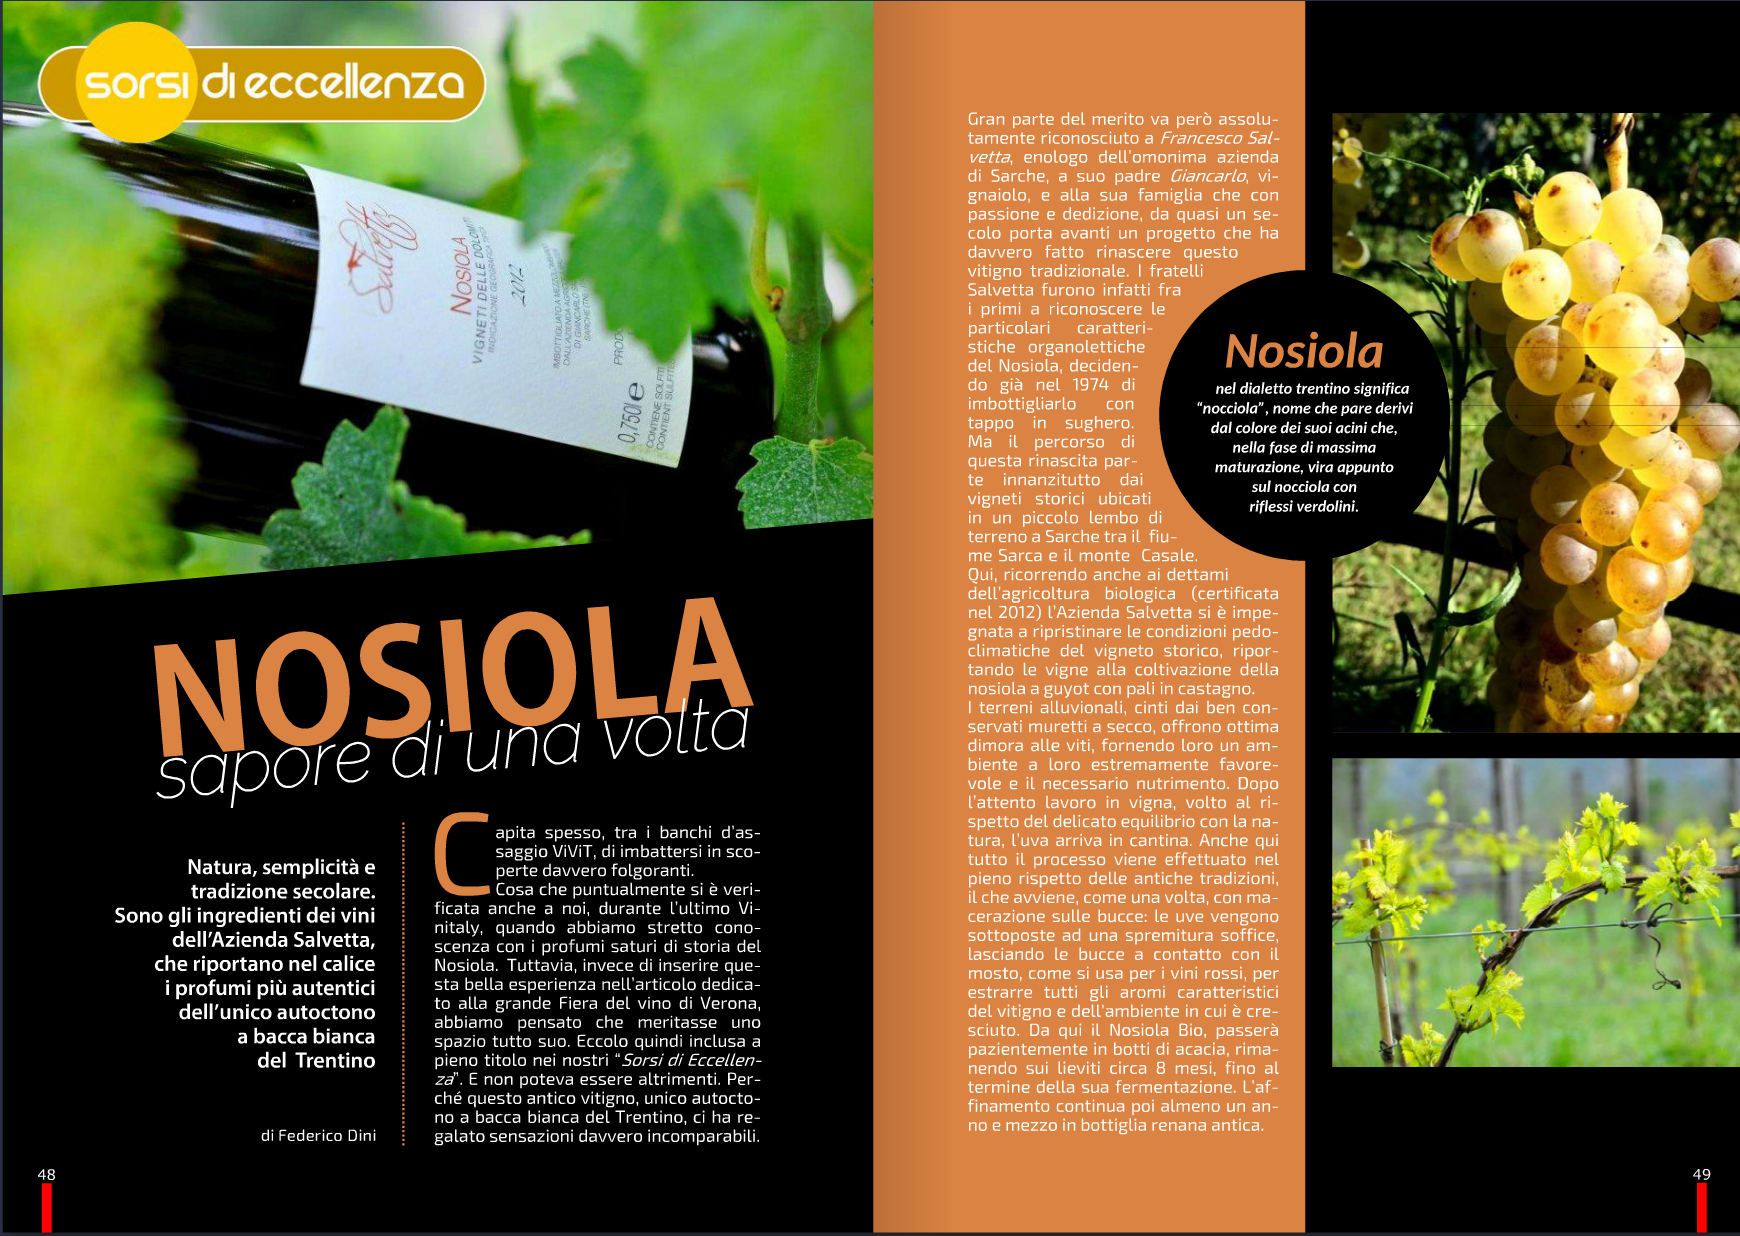 Pagina di una rivista dedicata al Nosiola